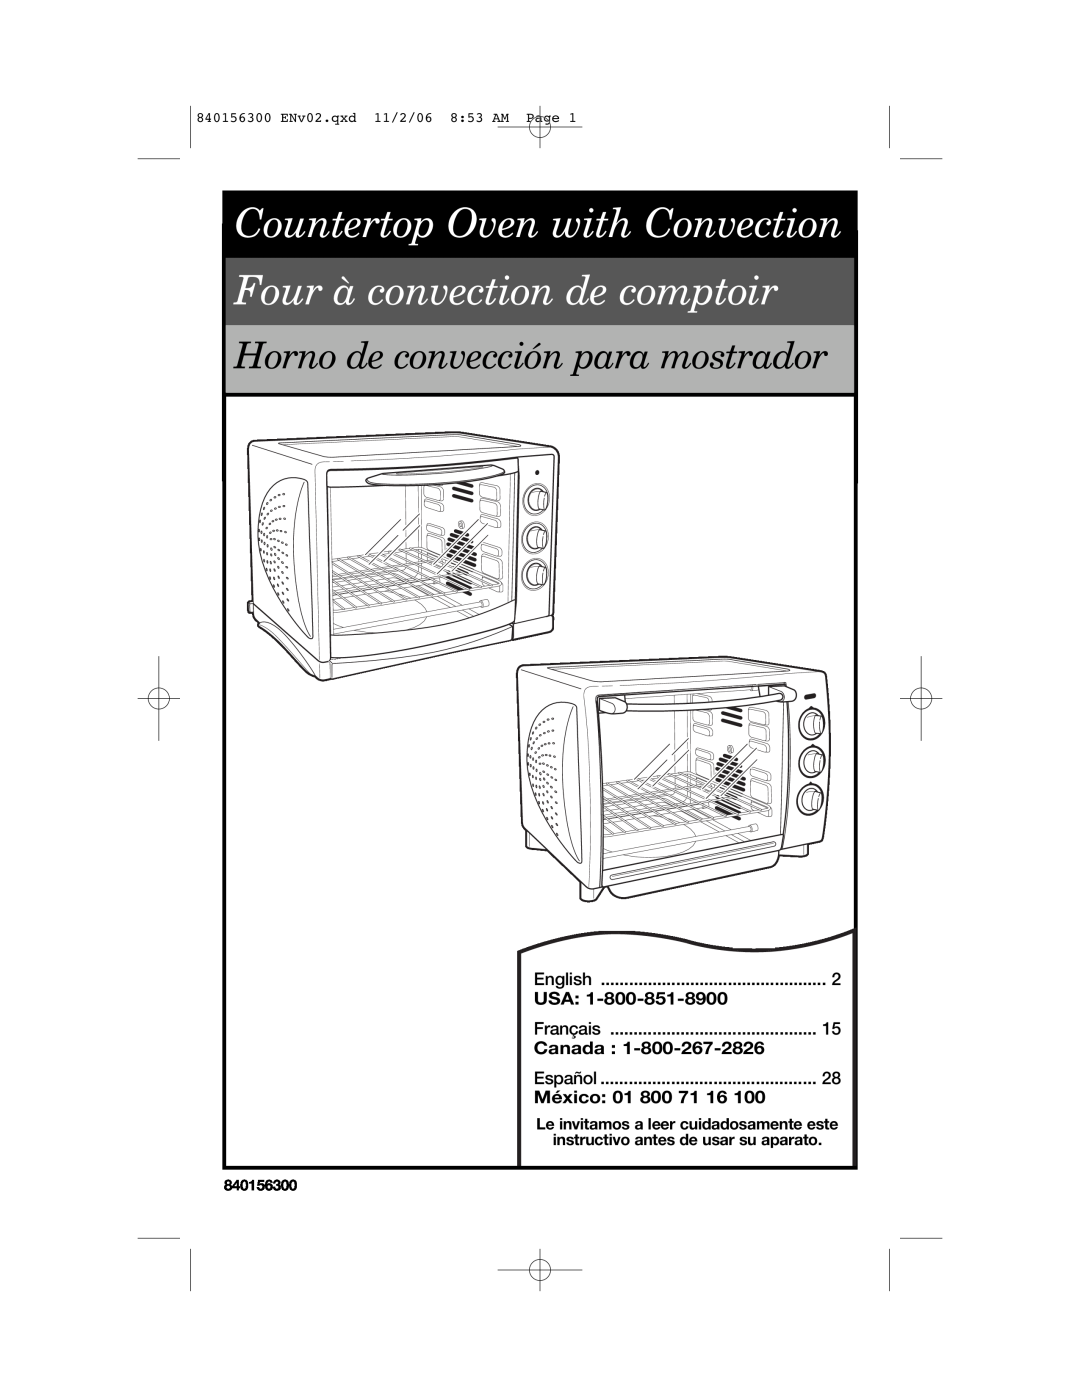 Hamilton Beach 840156300 manual Usa, Canada, México, Countertop Oven with Convection, Four à convection de comptoir 